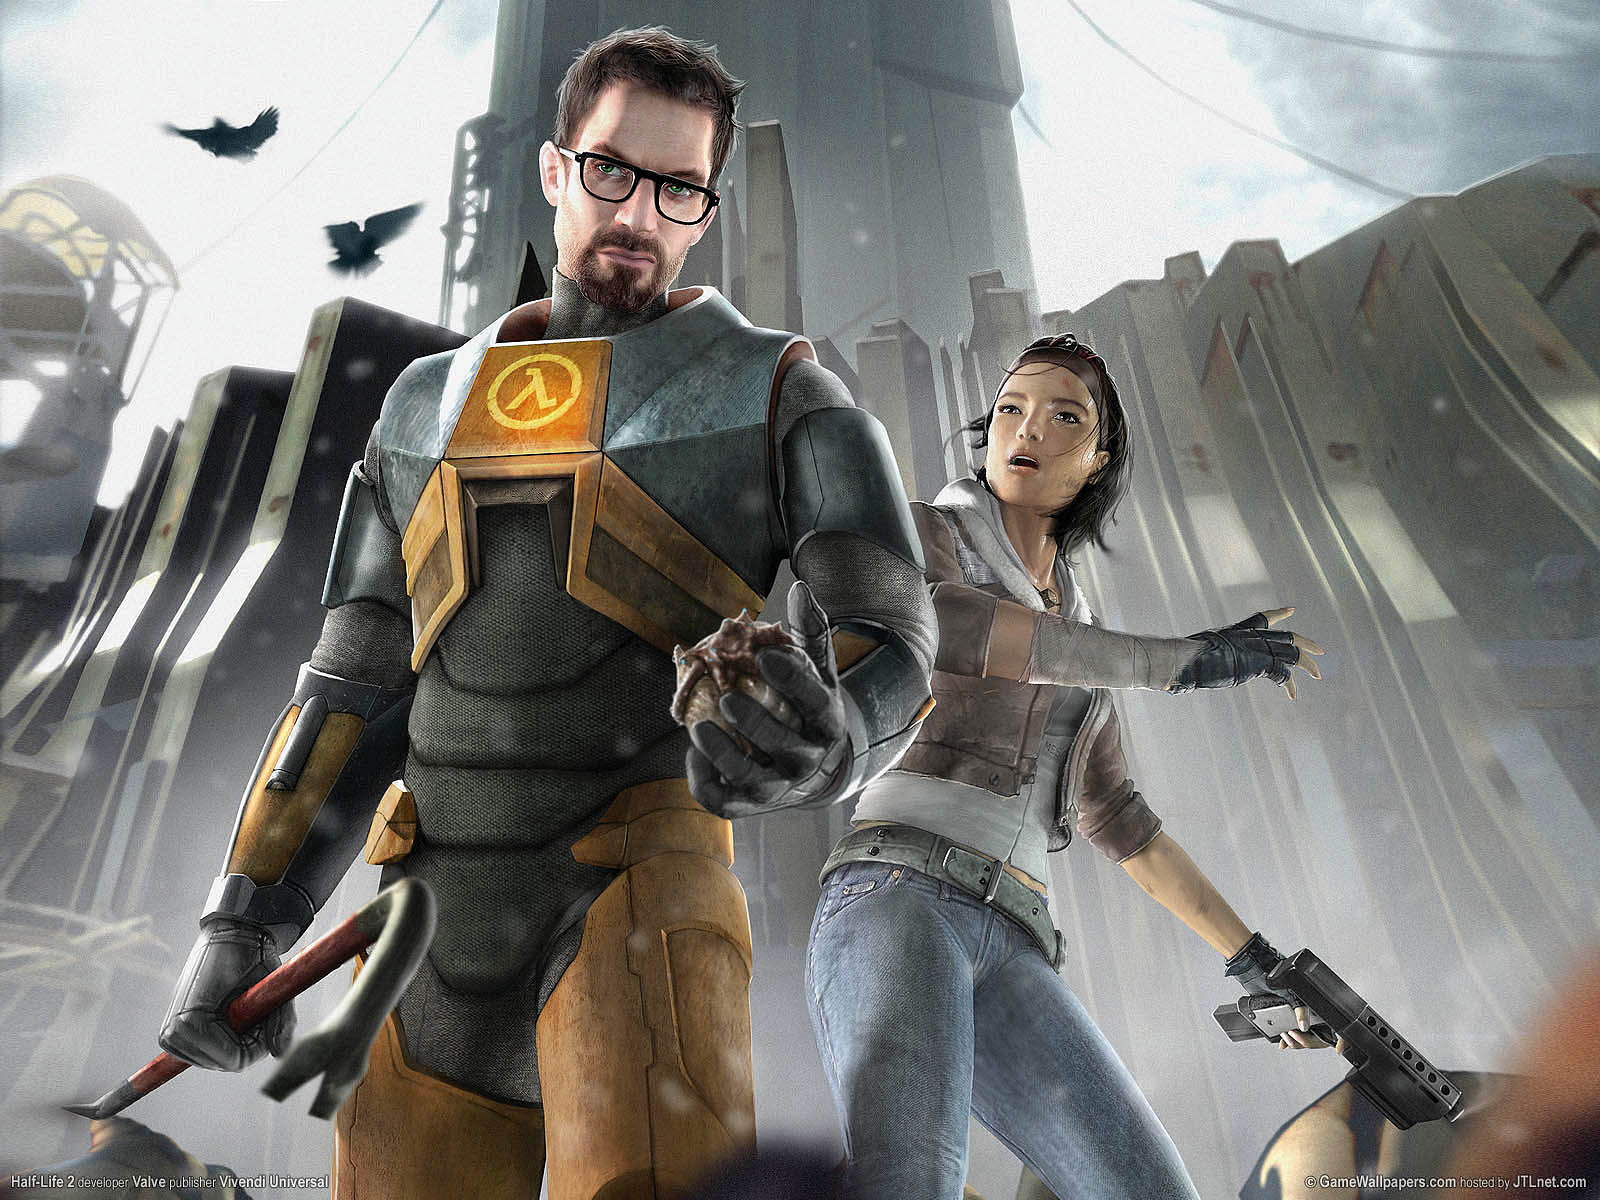 Историята на Half-Life 2 еp. 3 е епична, но за жалост няма да можем да я изиграем